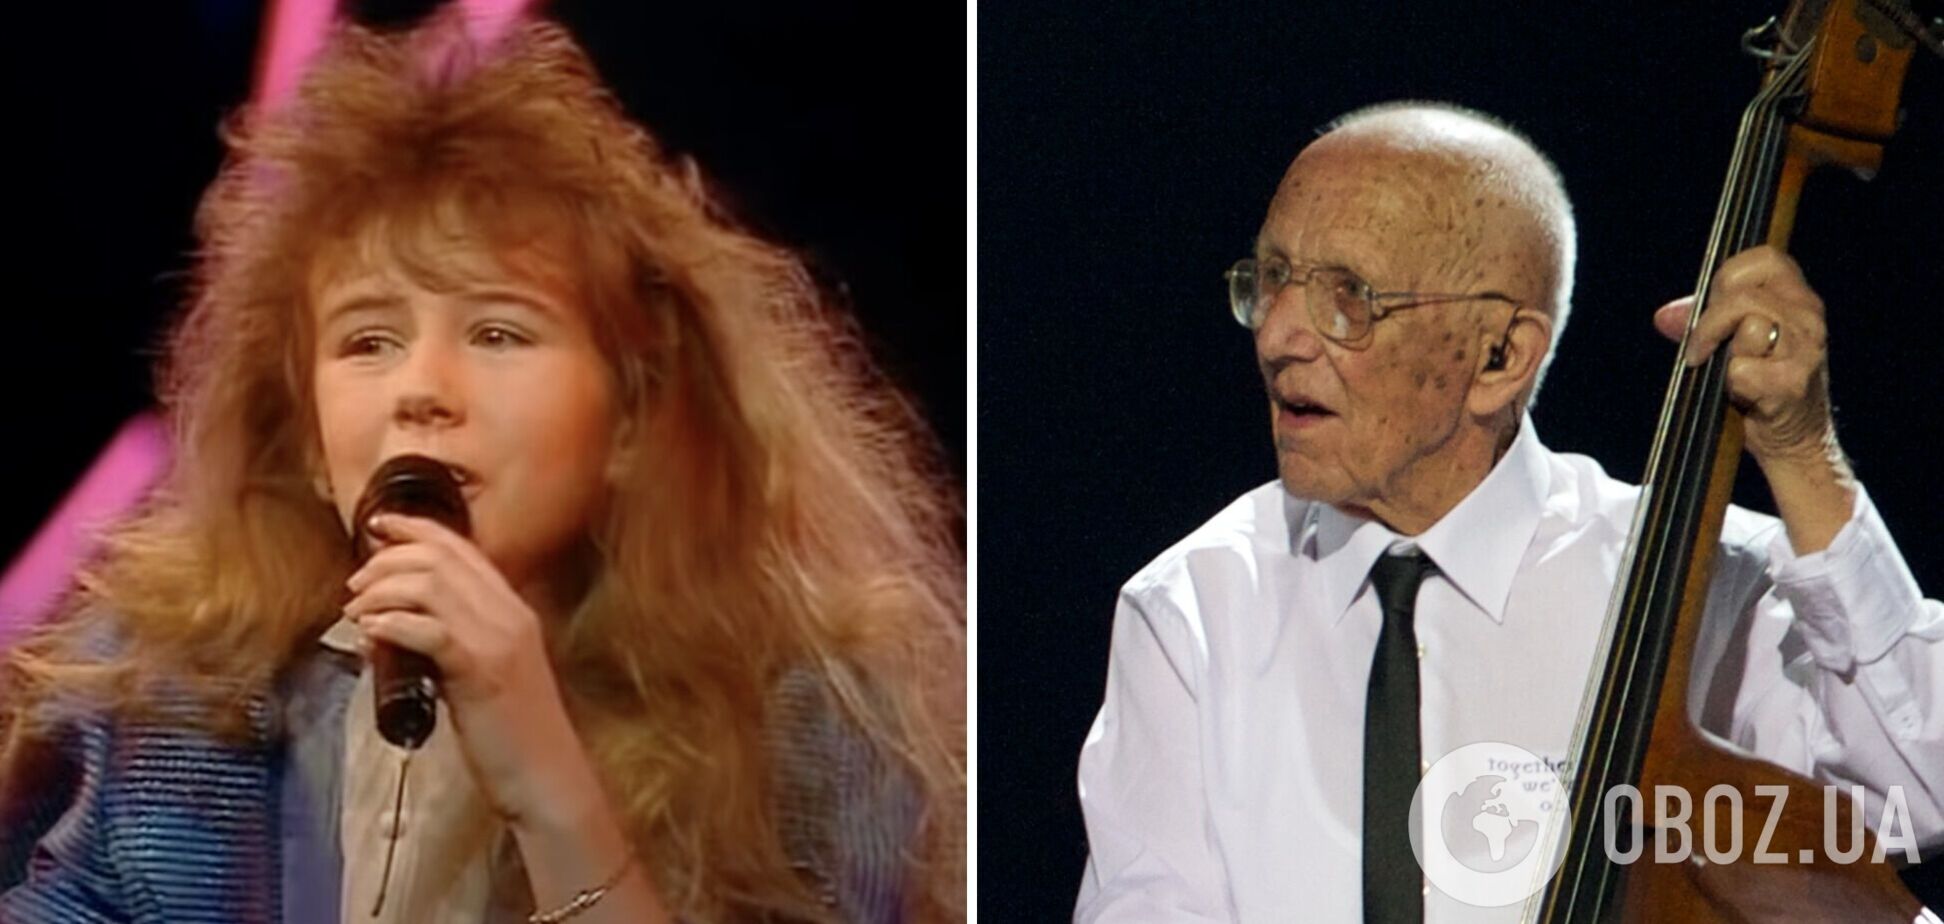 11 і 95 років: якими були виступи наймолодшого та найстаршого учасників Євробачення та які місця вони посіли